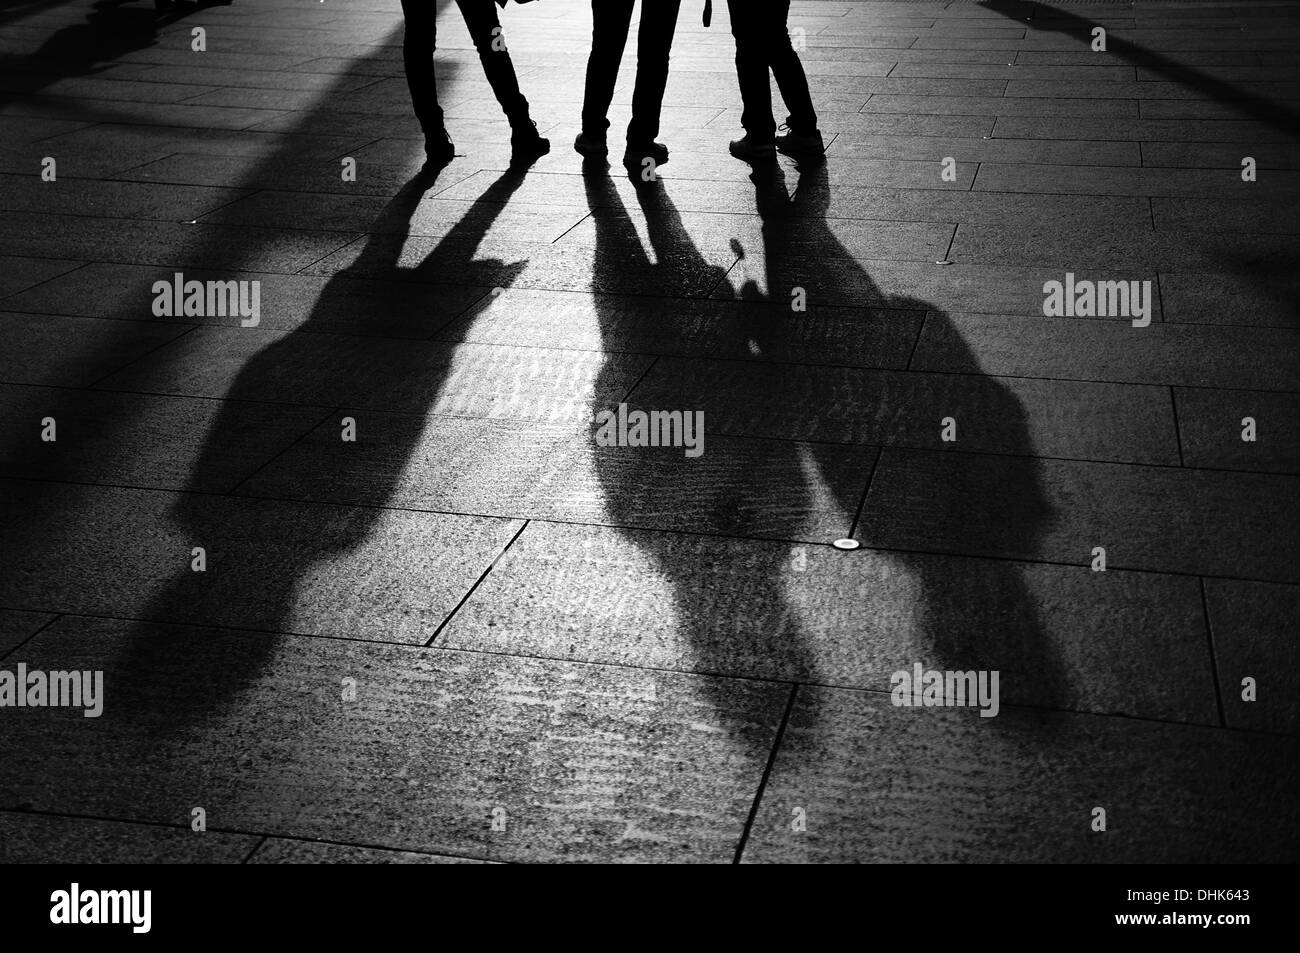 Les jambes et les ombres de trois personnes se tenant ensemble Photo Stock  - Alamy